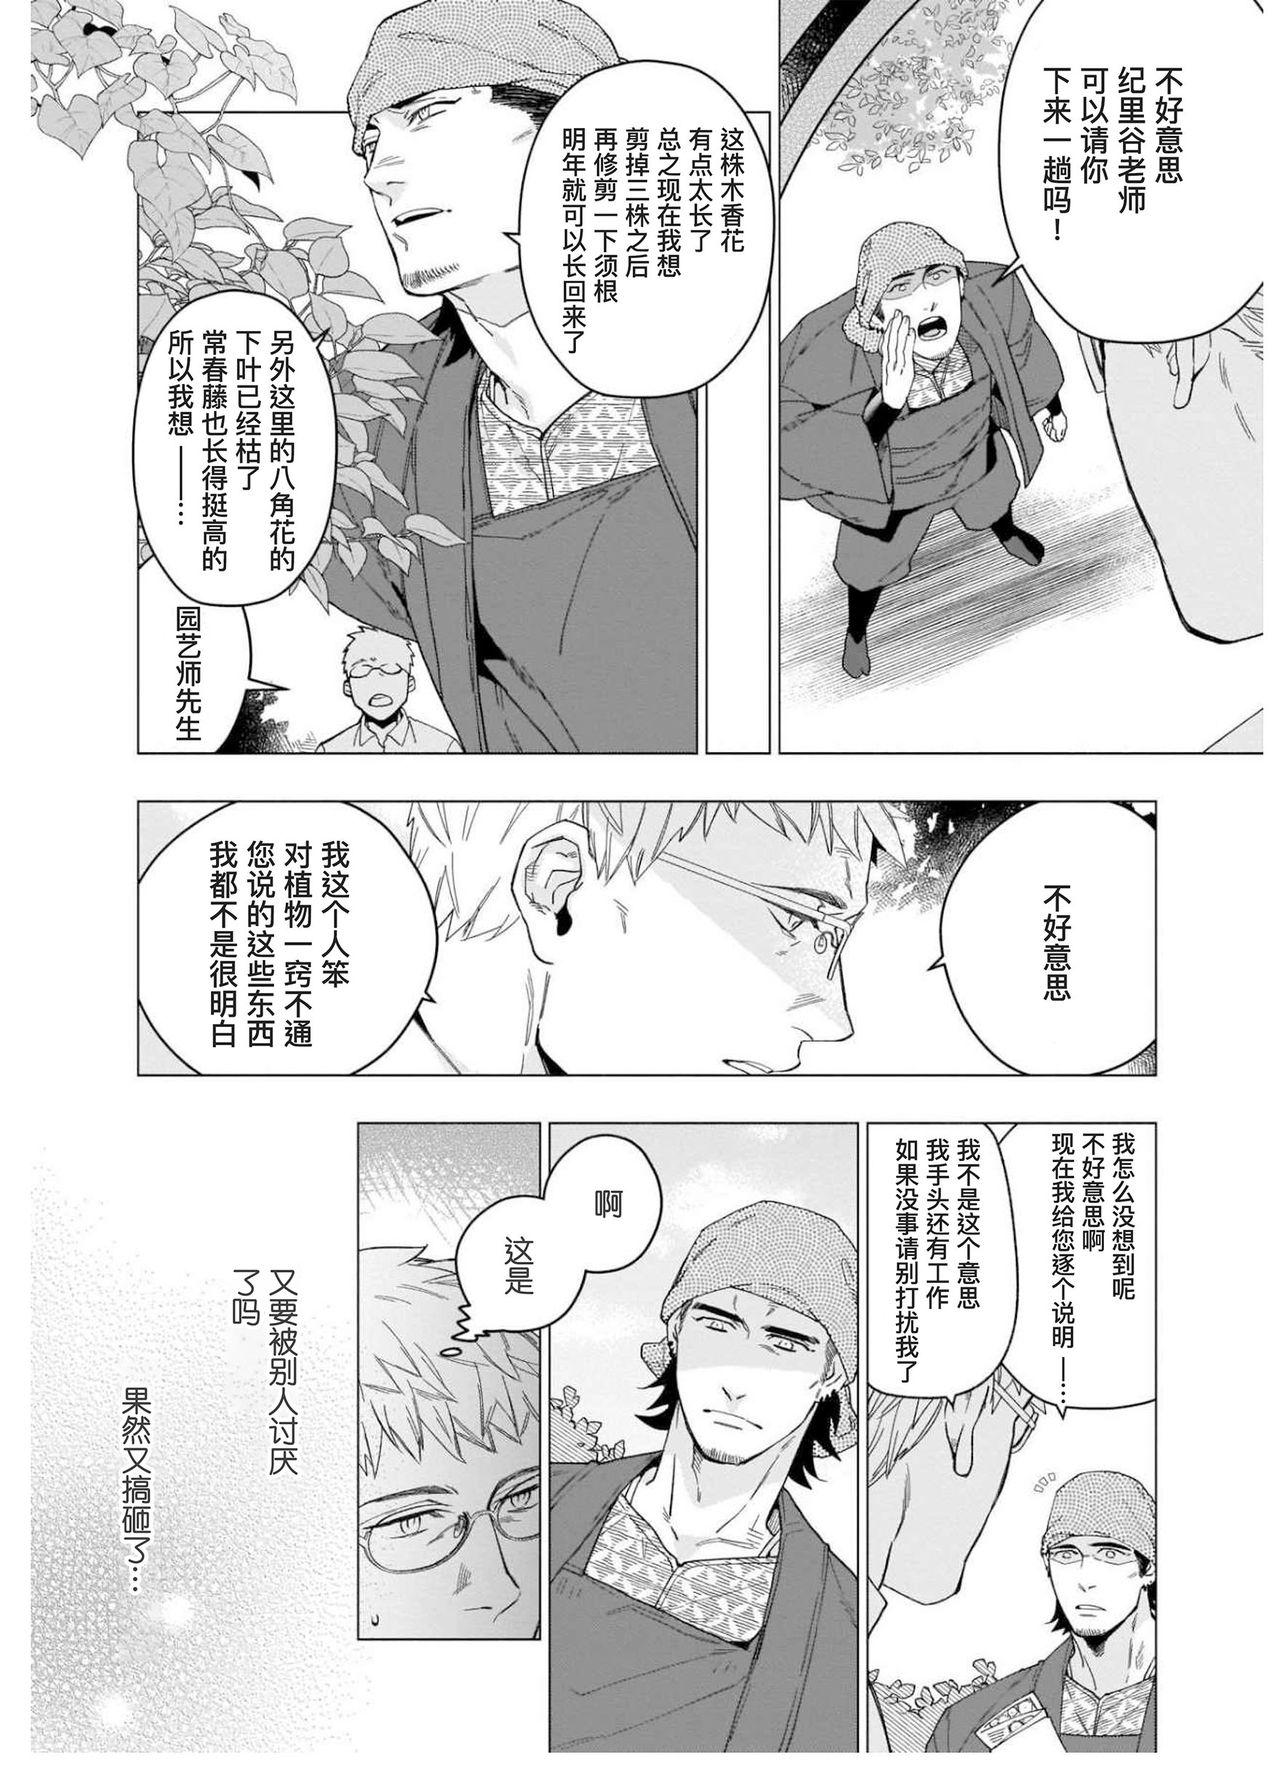 Stepsiblings Henkutsu shosetsuka wa koi ni irodzuku |别扭作家的秋色恋情 Dick Sucking Porn - Page 12